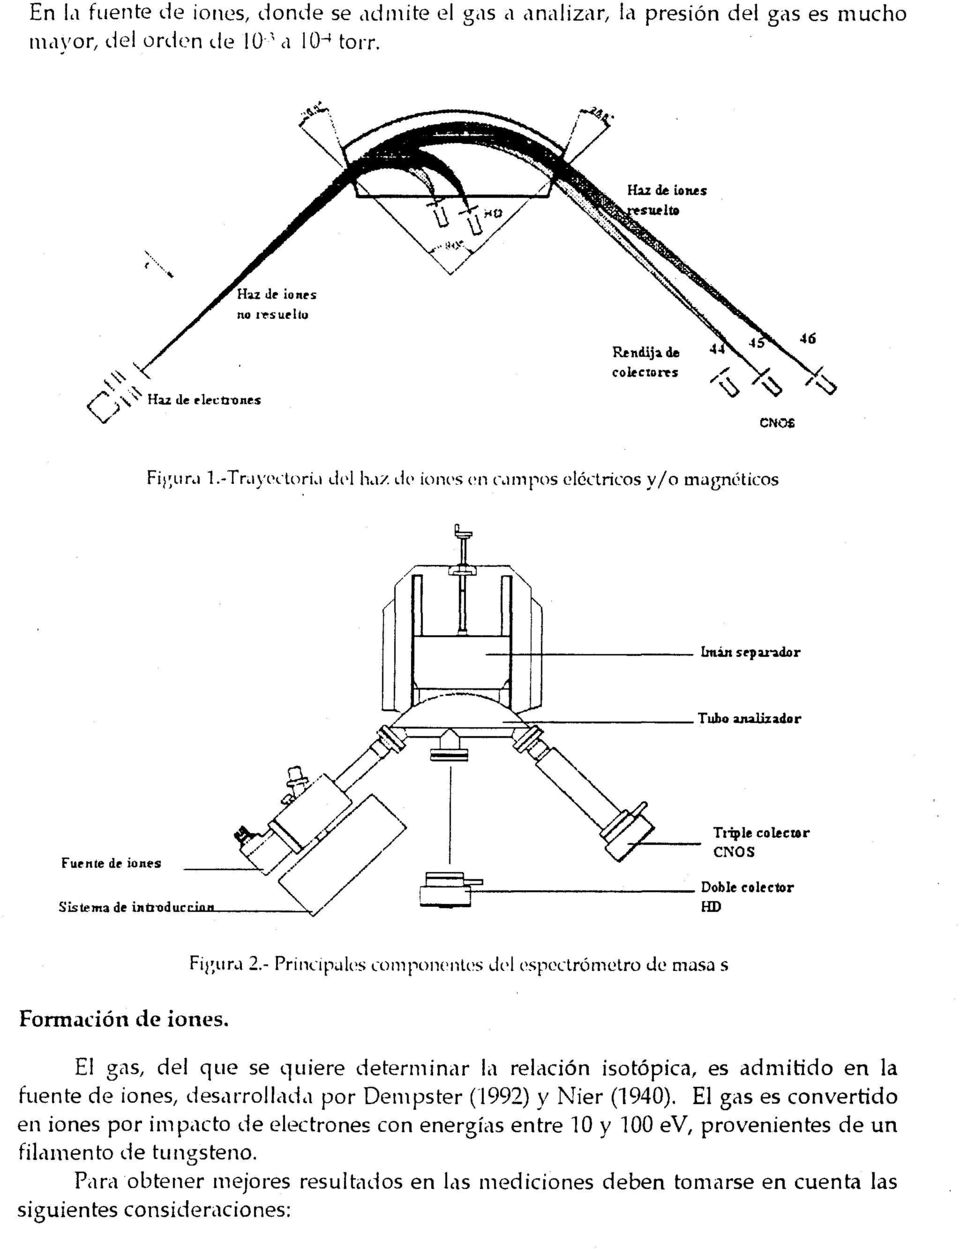 - Principales componentes del espectrómetro de masa s El gas, del que se quiere determinar la relación isotópica, es admitido en la fuente de iones, desarrollada por Dempster (1992) y Nier (1940).